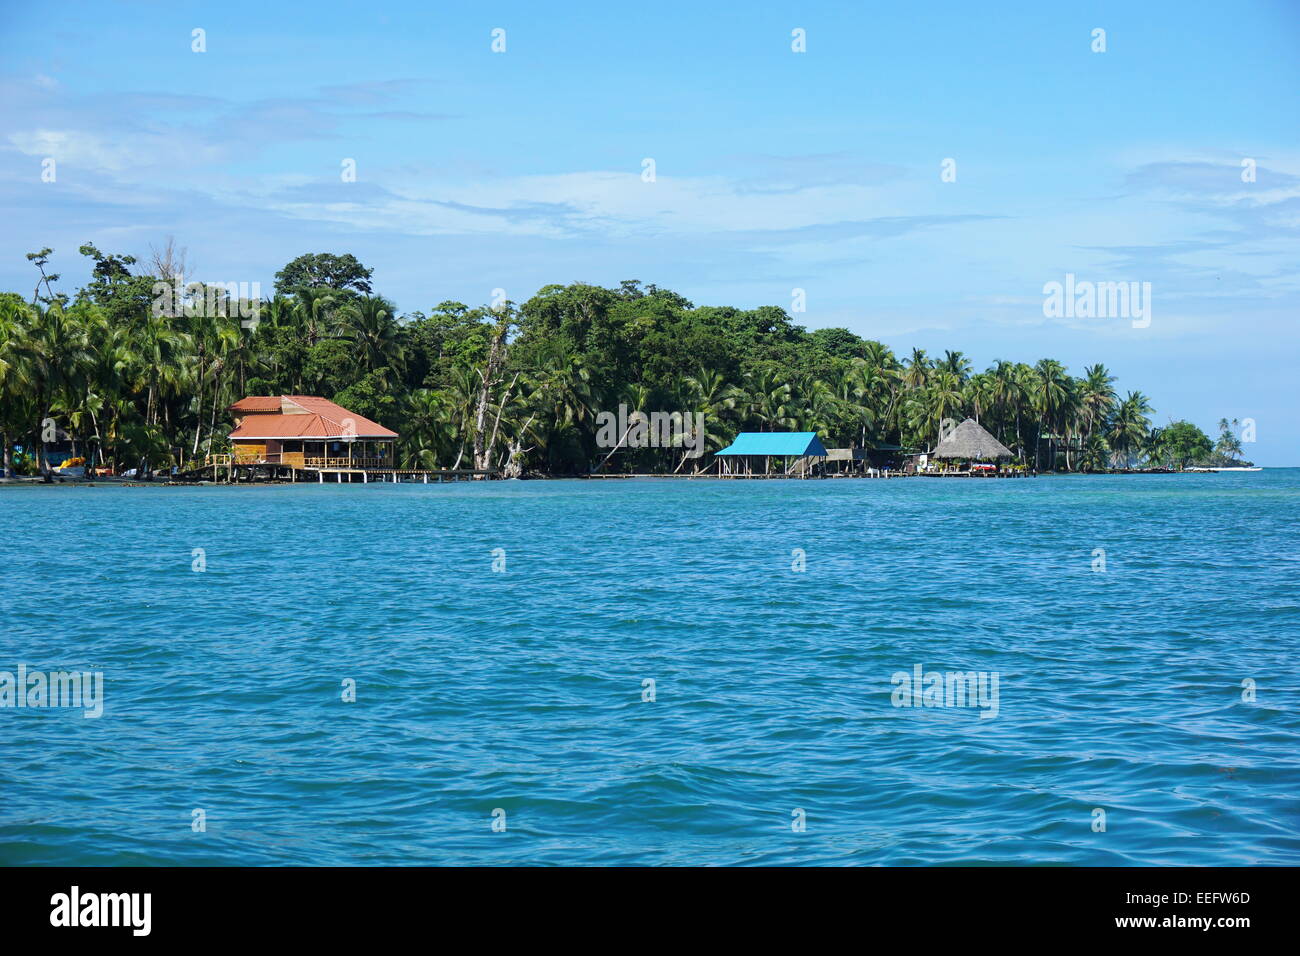 La costa de la Isla Carenero con Waterfront Restaurant, Caribe, Bocas del Toro, Panamá, América central Foto de stock